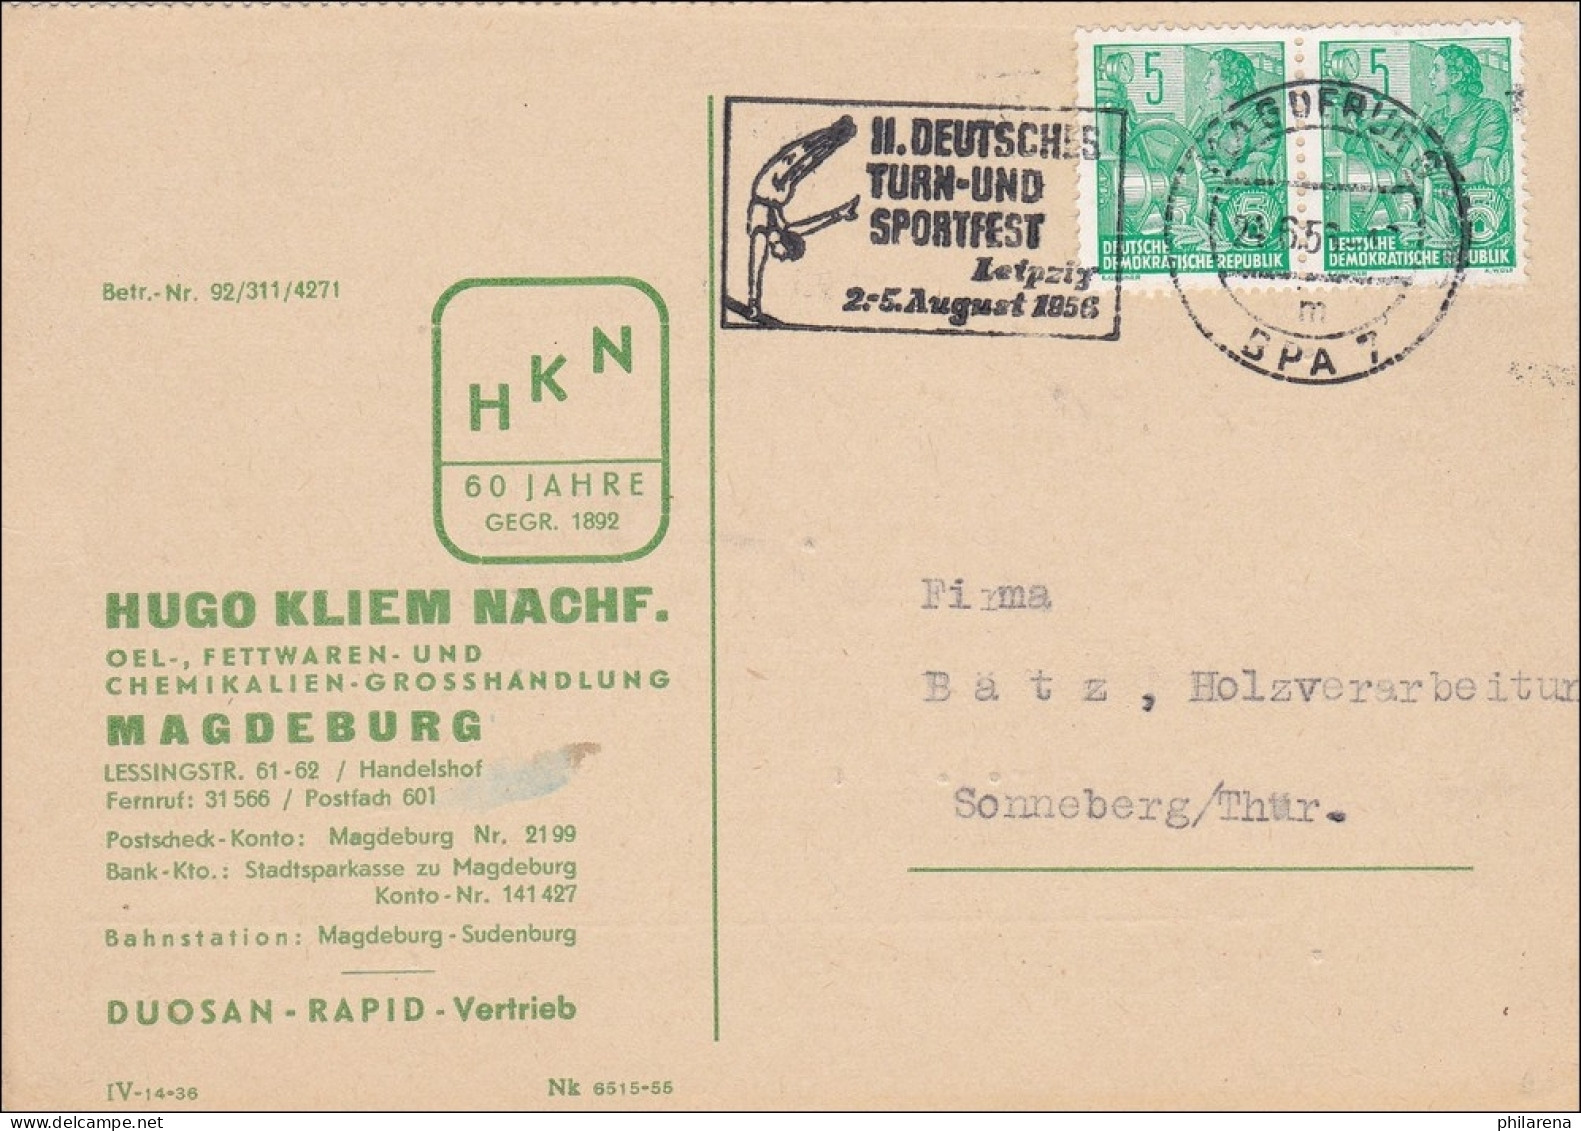 1956: Postkarte Farbenbestellung Magdeburg Nach Sonneberg-Werbestempel Turnfest - Lettres & Documents